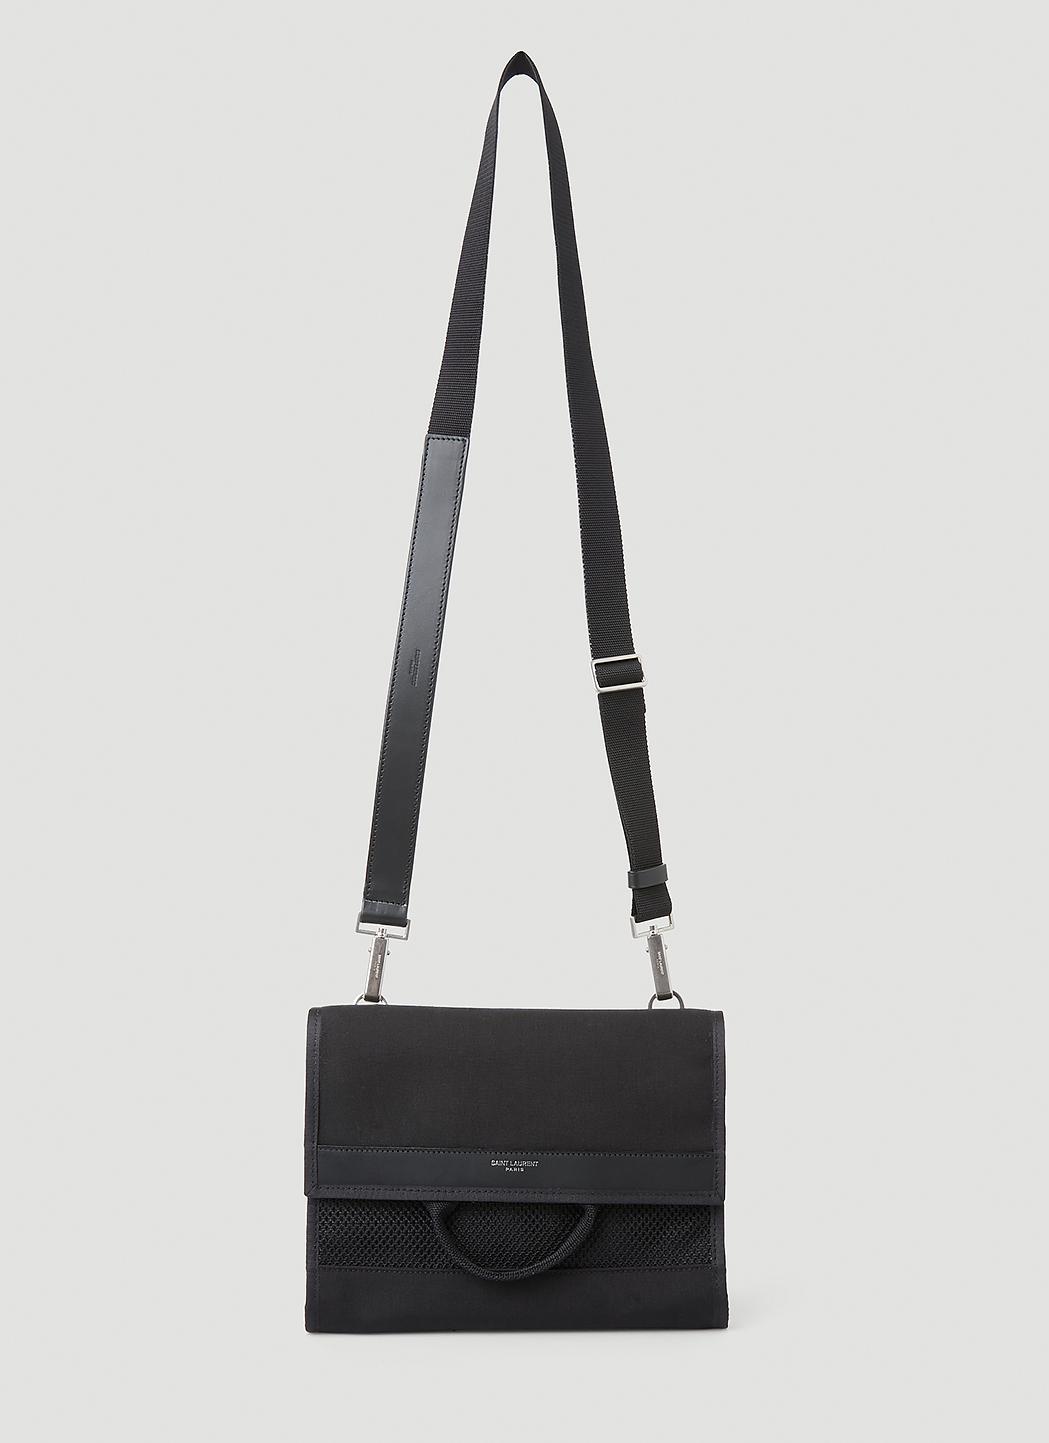 Saint Laurent, Bags, Saint Laurent Cassandre Flap Front Black On Black  Handbag